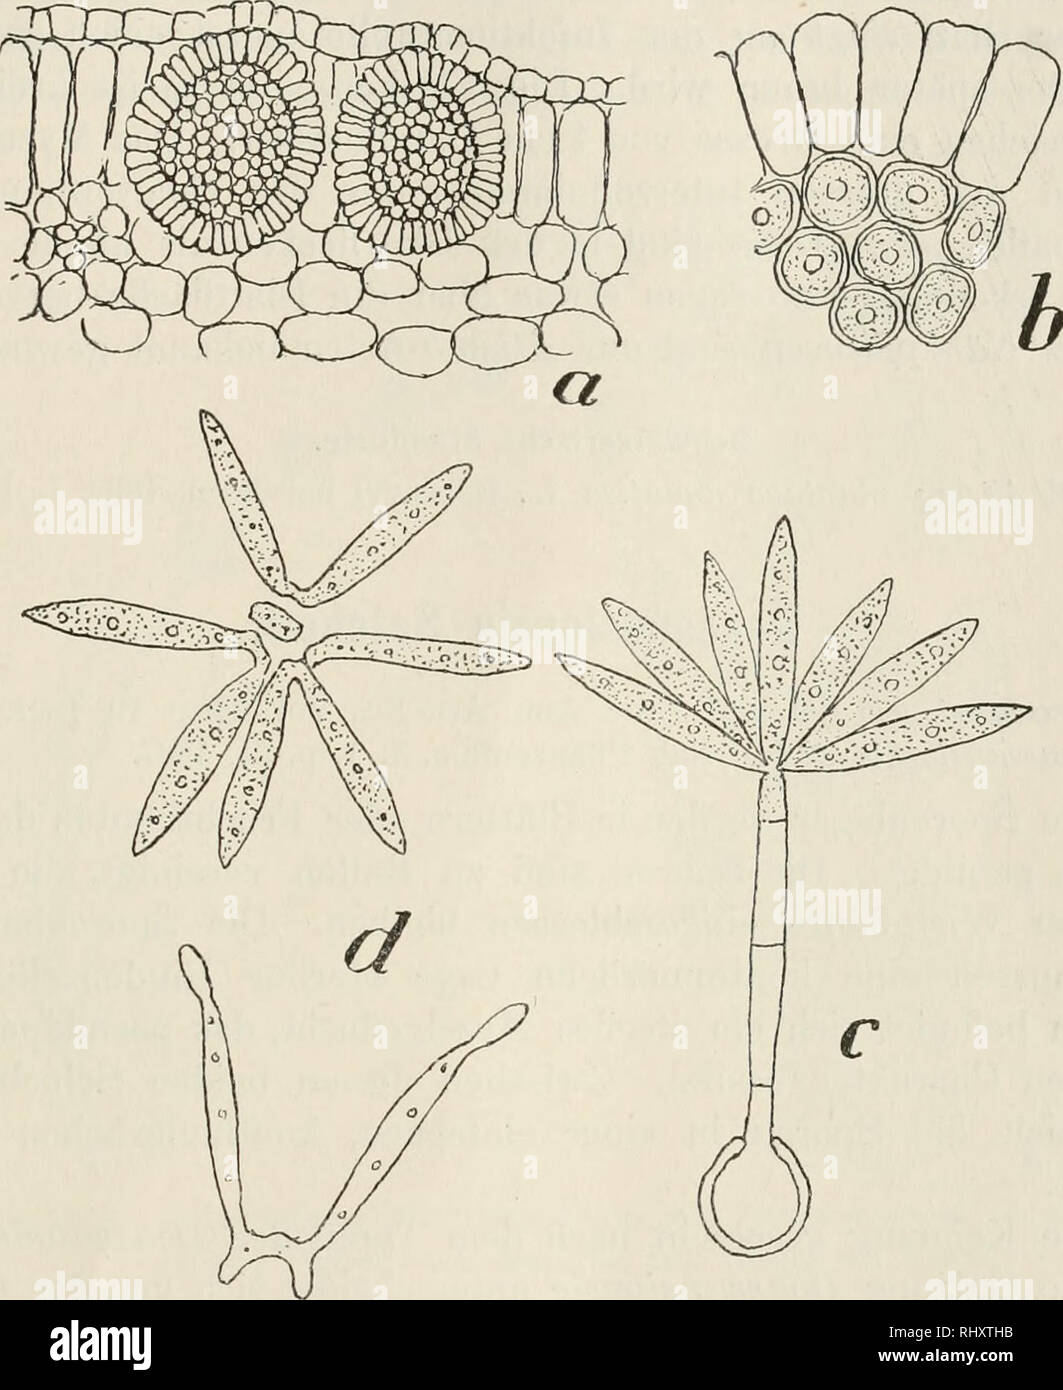 . Beitrge zur Kryptogamenflora der Schweiz. 125 Die Sporenkeimung wurde von Cornu, Setchell, Brefeld (3) beschrieben. Die Sporenballen werden durch Zersetzung des Blatt- gewebes frei und schwimmen an der Wasseroberfläche oder lösen sich. Fig. 62 a. Blattquerschnitt von Alisma platUago aquatica L. mit Boassansia AUstnatis (Nees) Cornu, 150 nach Setchell. b. Teil des Sporenballens von Doassansia Alismatis (N.), Cornu, 650, nach Setchell. c. Gekeimte Spore von Doassansia AUstnatis (N.) Cornu, 1000, nach Setchell. d. Losgetrennte Conidien von D. Alismatis (N.) Cornu, 1000, nach Setchell. in die ei Stock Photo